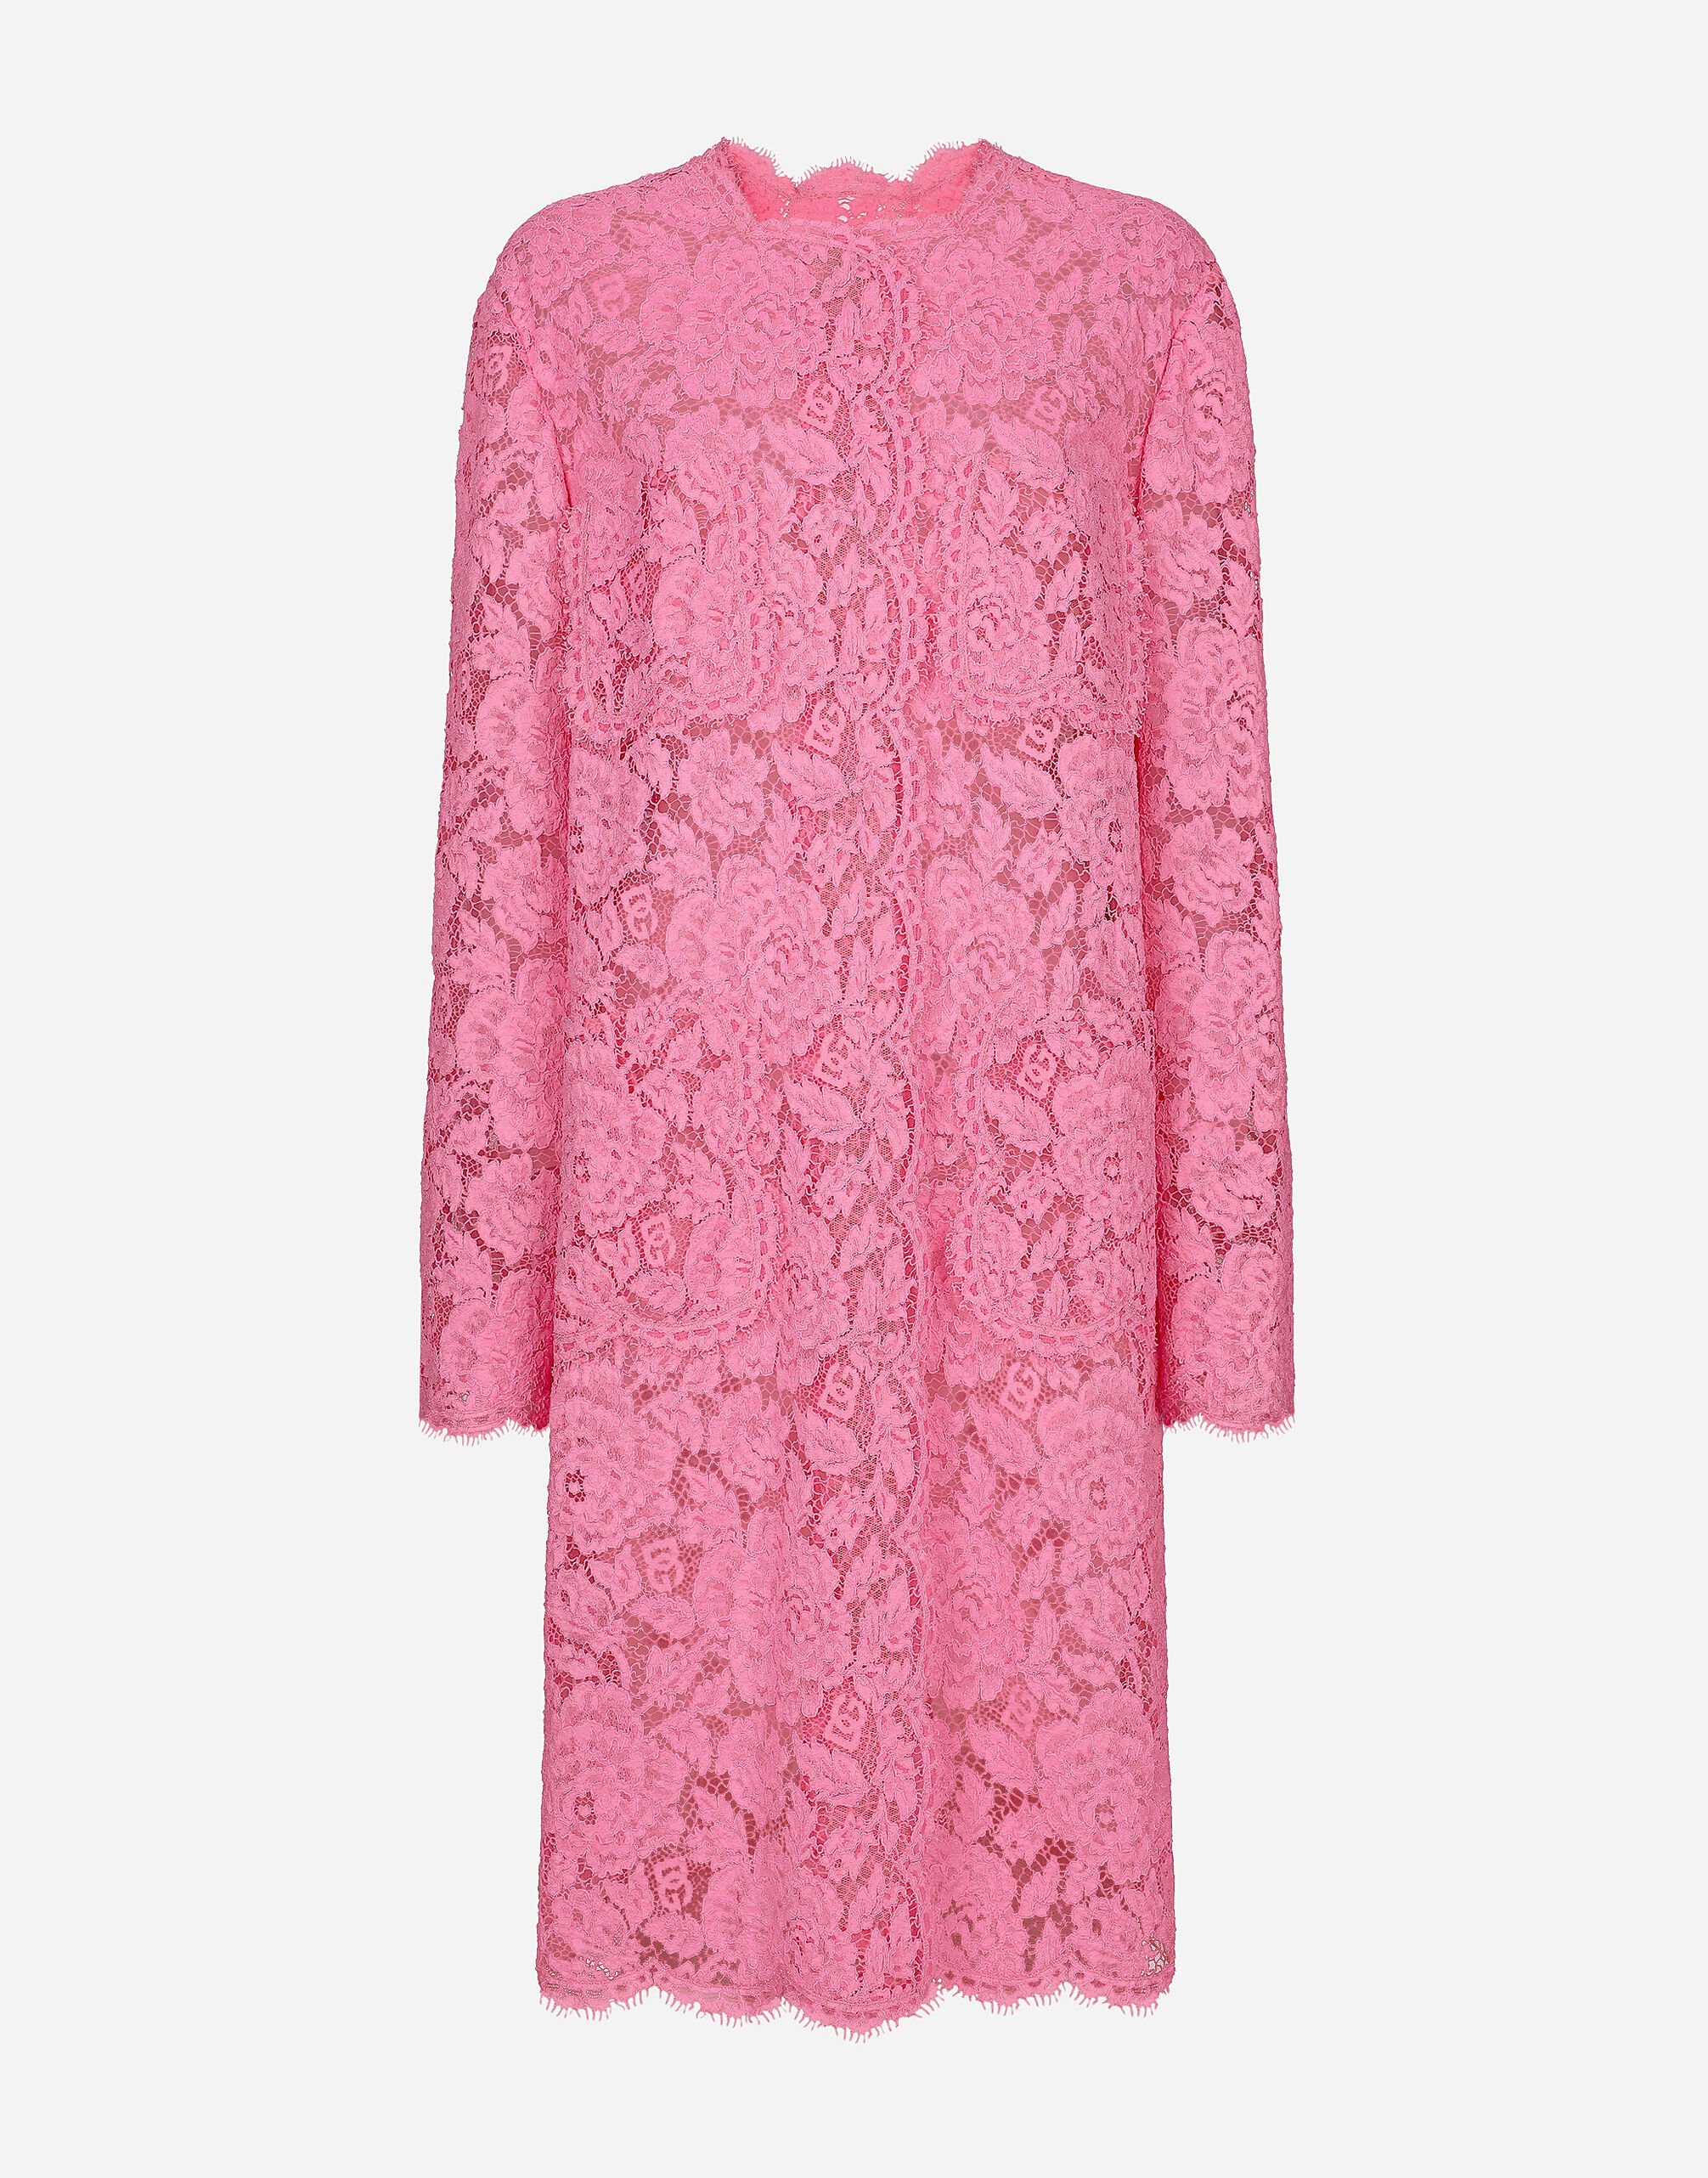 Dolce & Gabbana Abrigo de encaje cordonetto floral con logotipo Rosa F79DATFMMHN